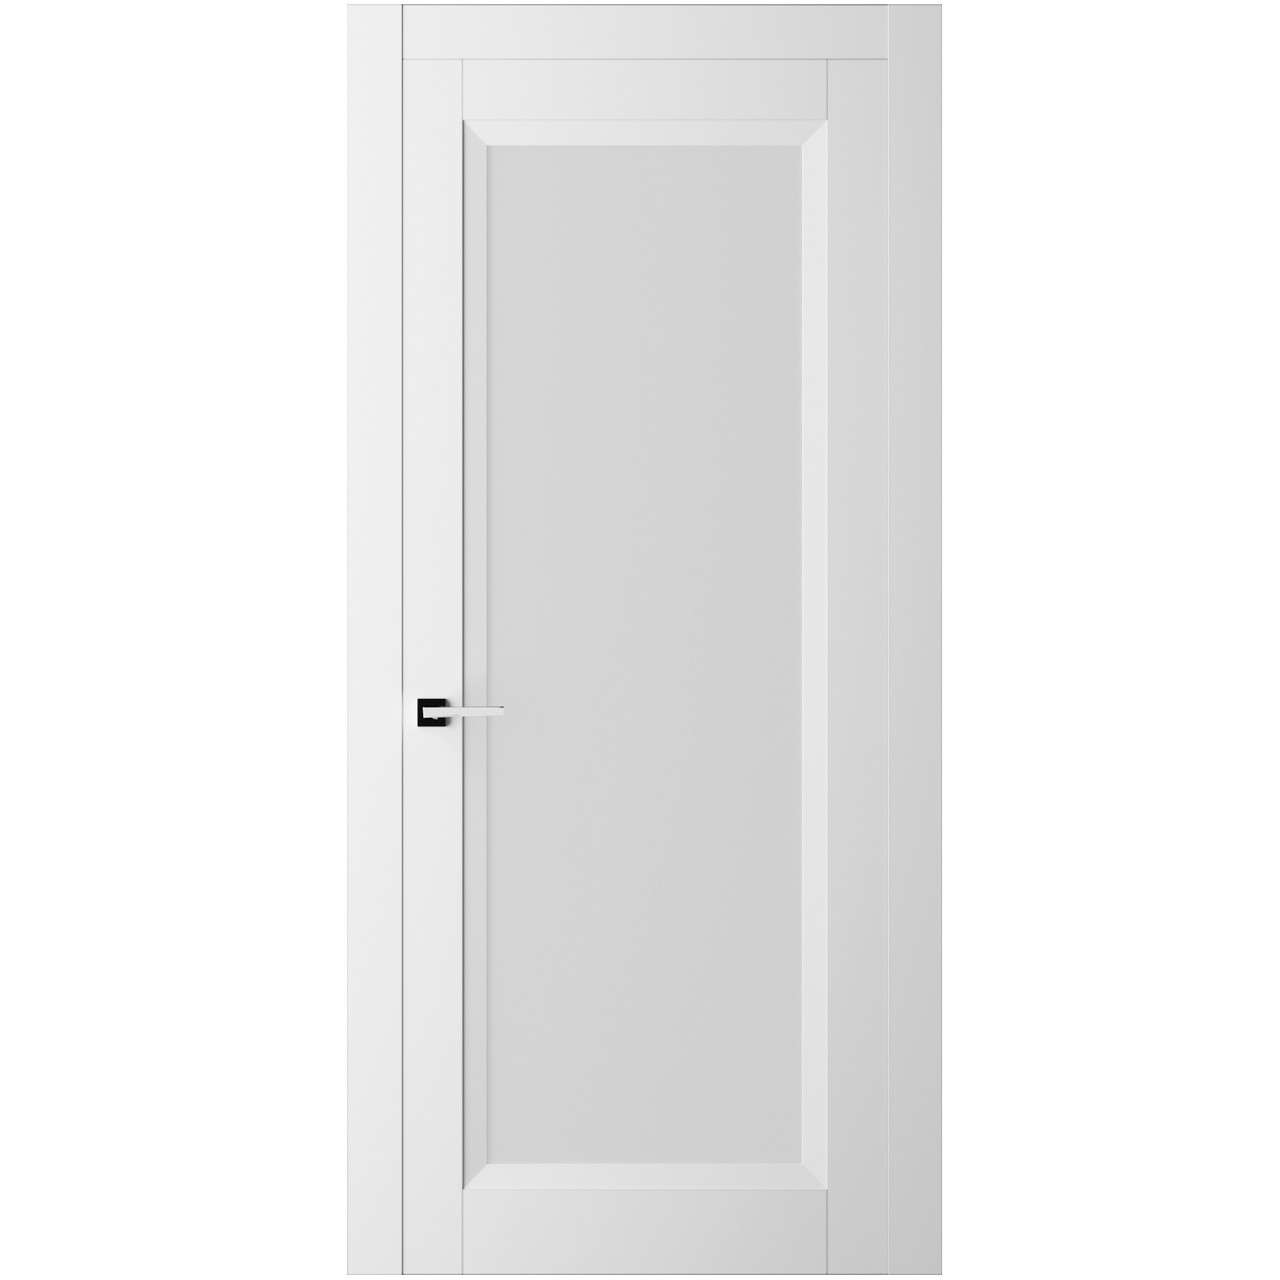 Дверь межкомнатная Ликорн Френч Кат ДКФКГ.3 1900*800*40мм (без замков и петель, с телескопической коробкой и